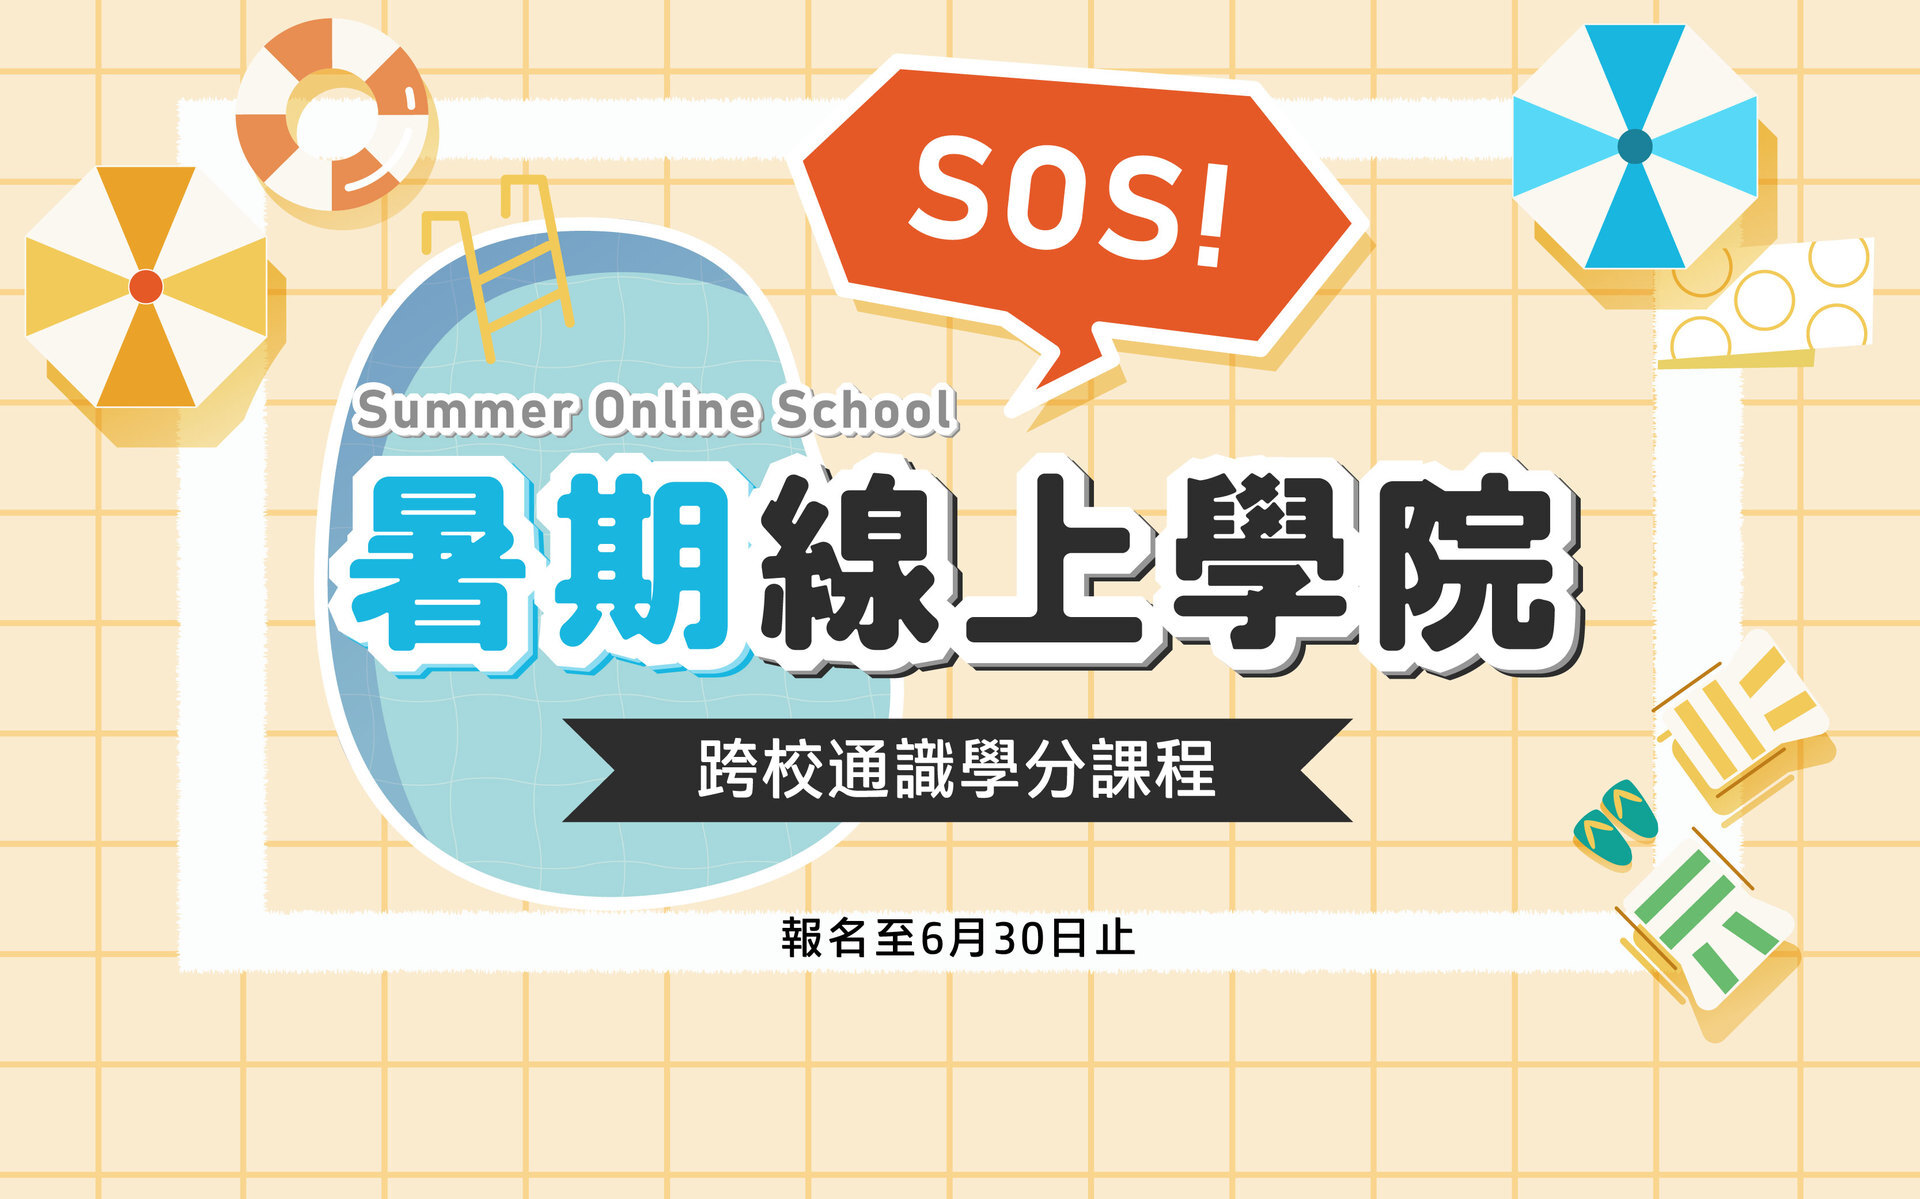 東華大學2022-SOS暑期線上學院報名至6月30日止